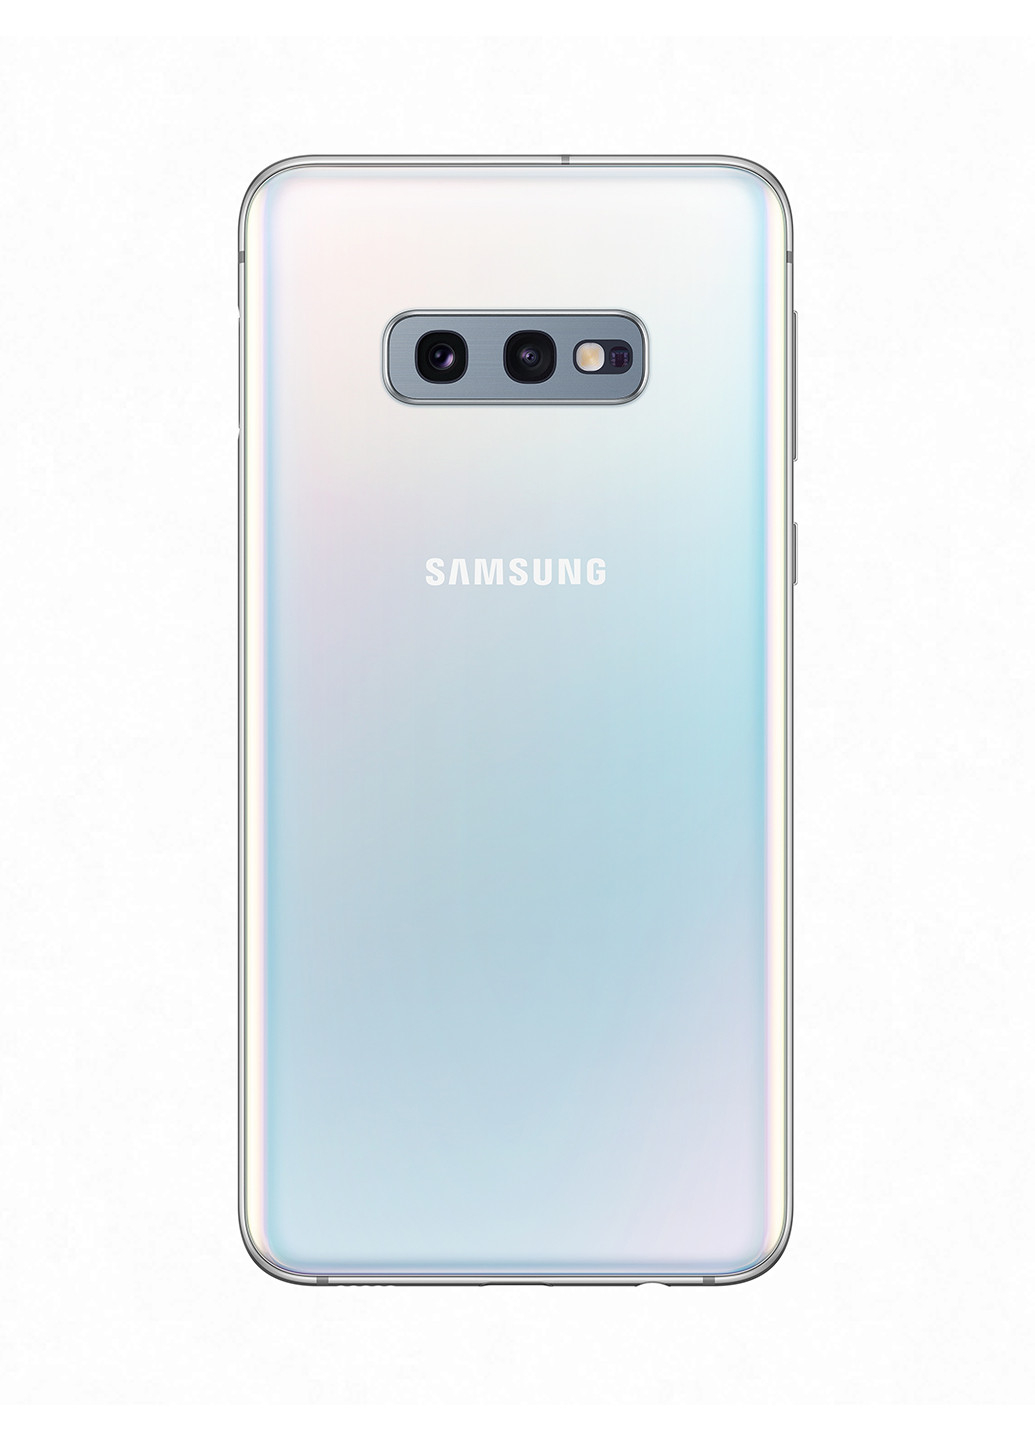 Смартфон Samsung galaxy s10e 6/128gb white (sm-g970fzwdsek) (151485030)